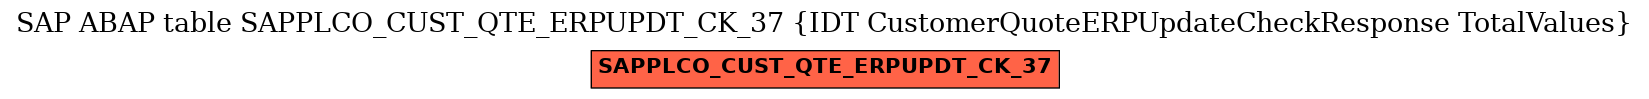 E-R Diagram for table SAPPLCO_CUST_QTE_ERPUPDT_CK_37 (IDT CustomerQuoteERPUpdateCheckResponse TotalValues)